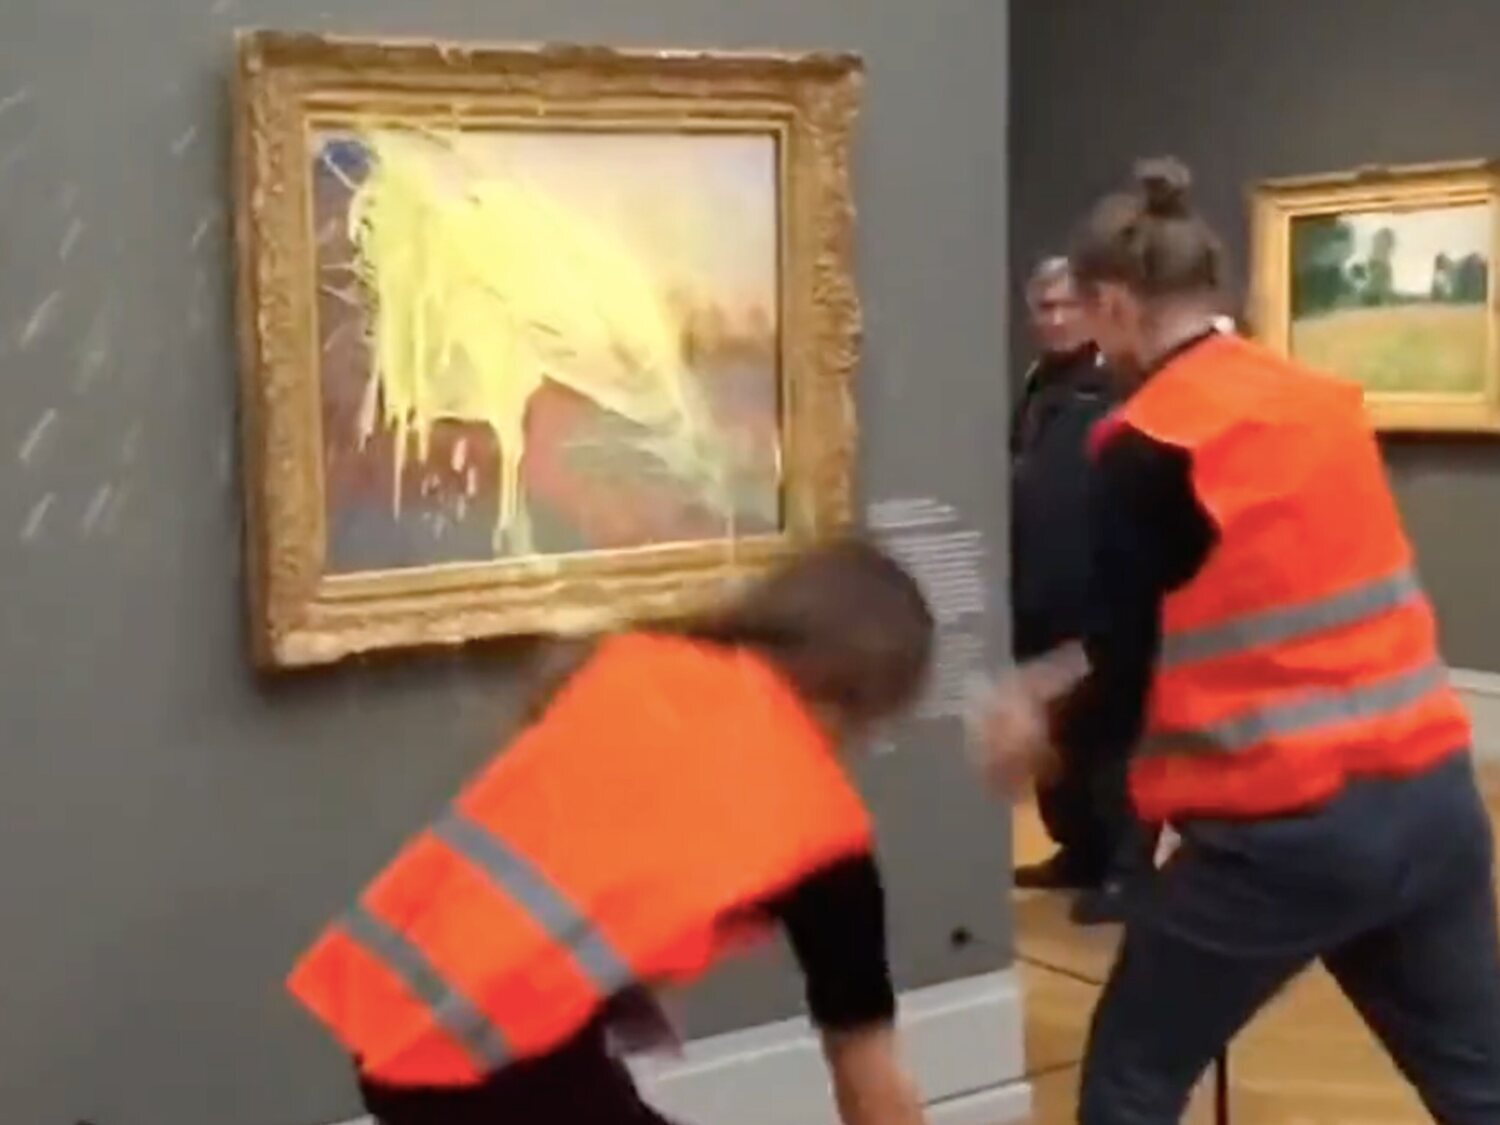 Un grupo de activistas climáticos arroja puré de patata sobre un cuadro de Monet en Alemania